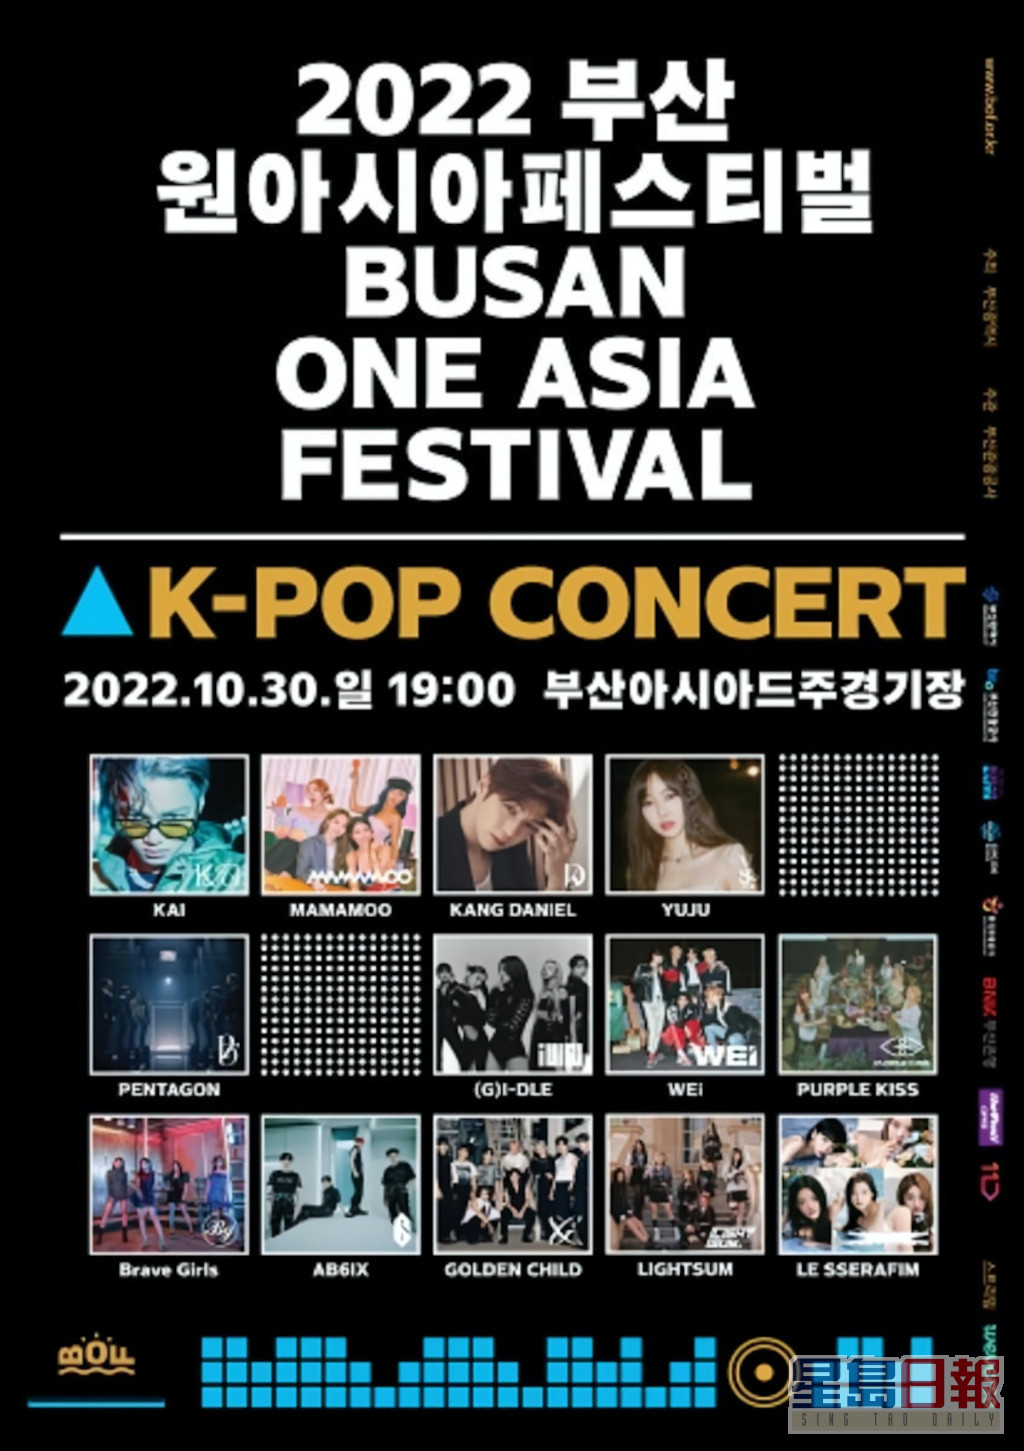 「2022釜山韓流音樂節」宣佈取消。